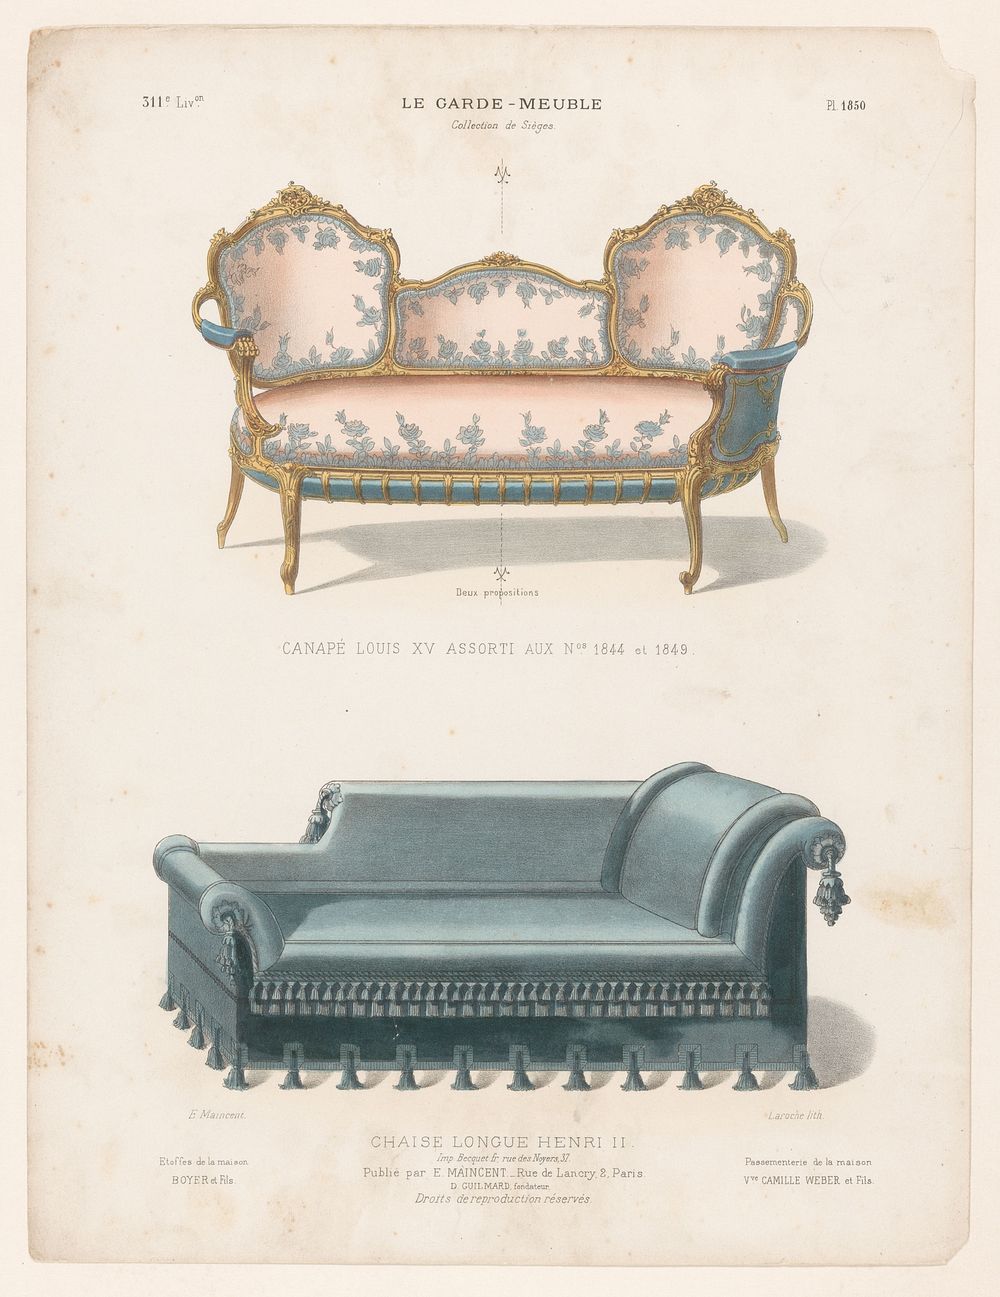 Canapé en chaise longue (1885 - 1895) by Léon Laroche, Becquet frères, Eugène Maincent and Désiré Guilmard